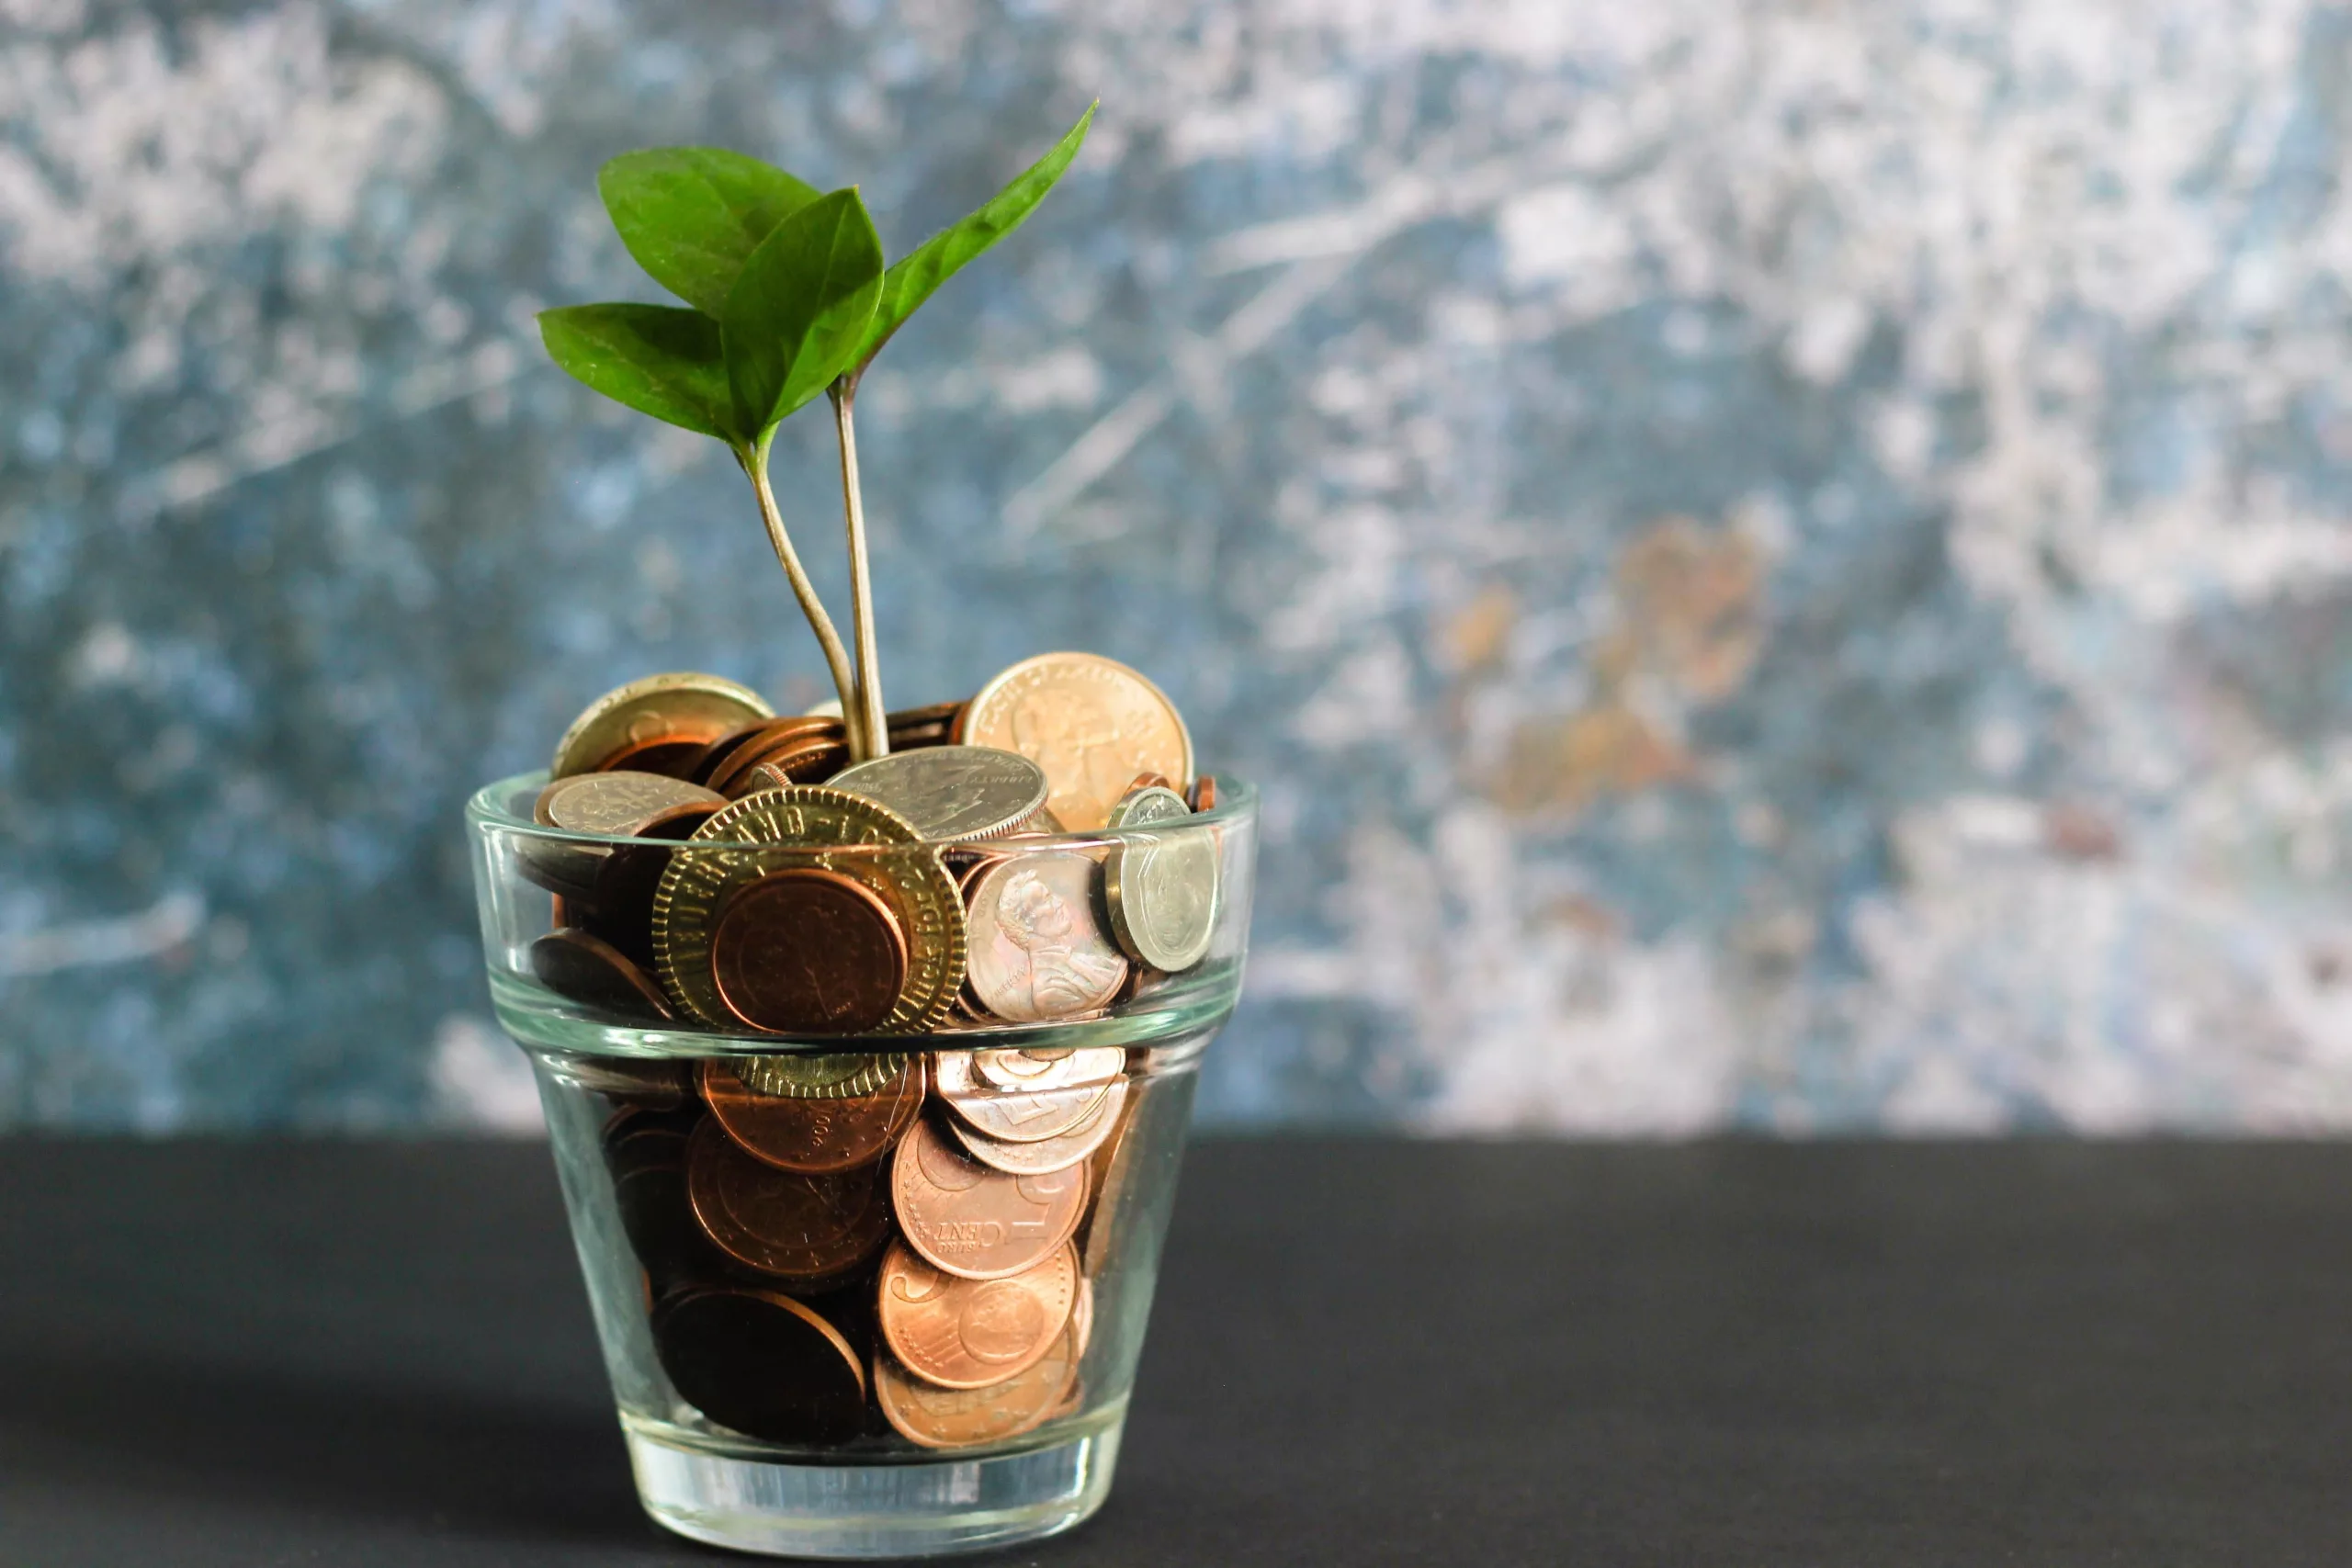 Das Bild zeigt ein Glas gefüllt mit Geldmünzen aus dem eine kleine Pflanze wächst.